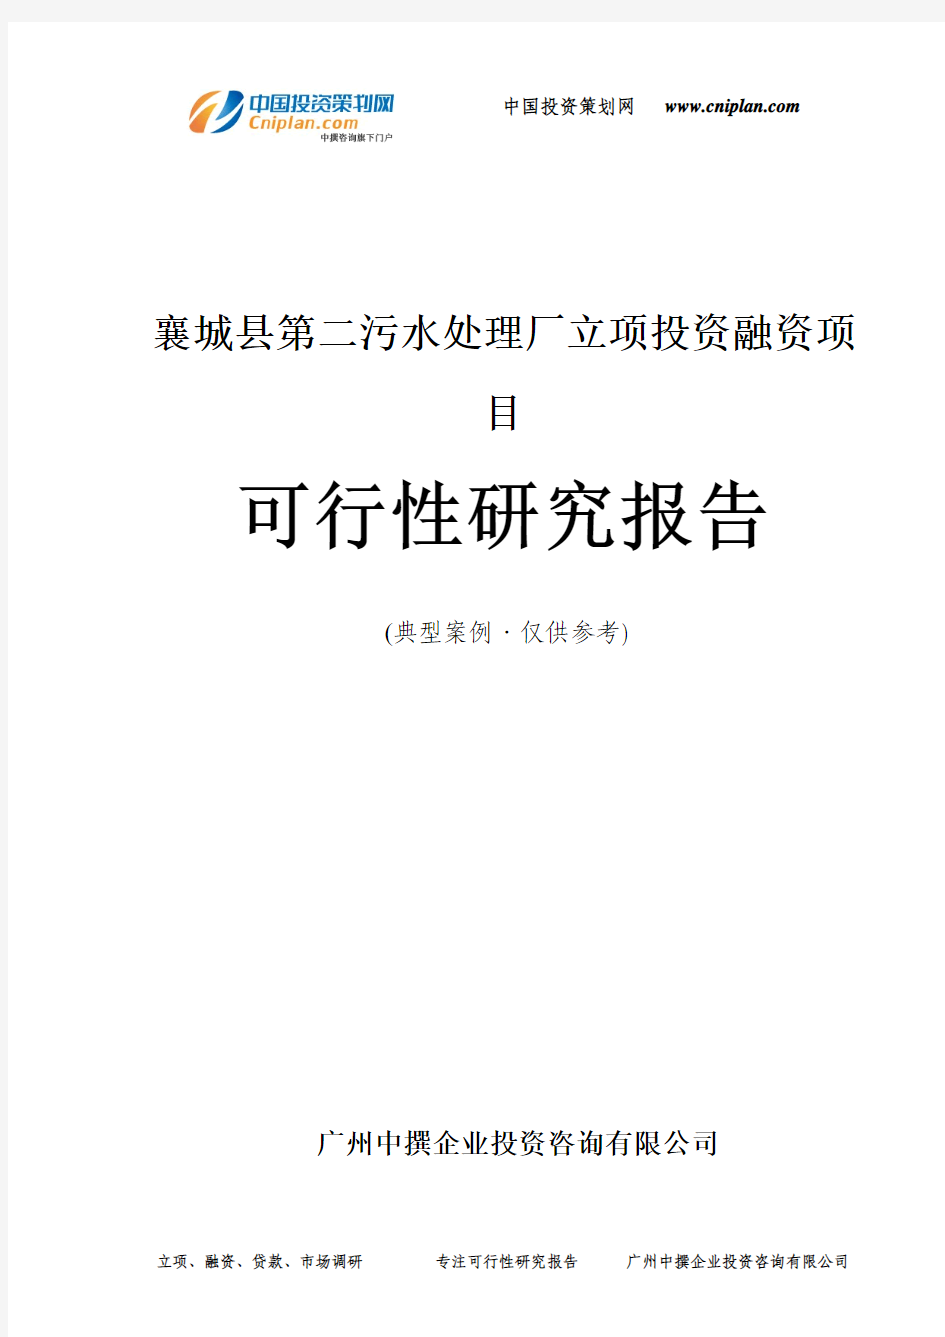 襄城县第二污水处理厂融资投资立项项目可行性研究报告(中撰咨询)